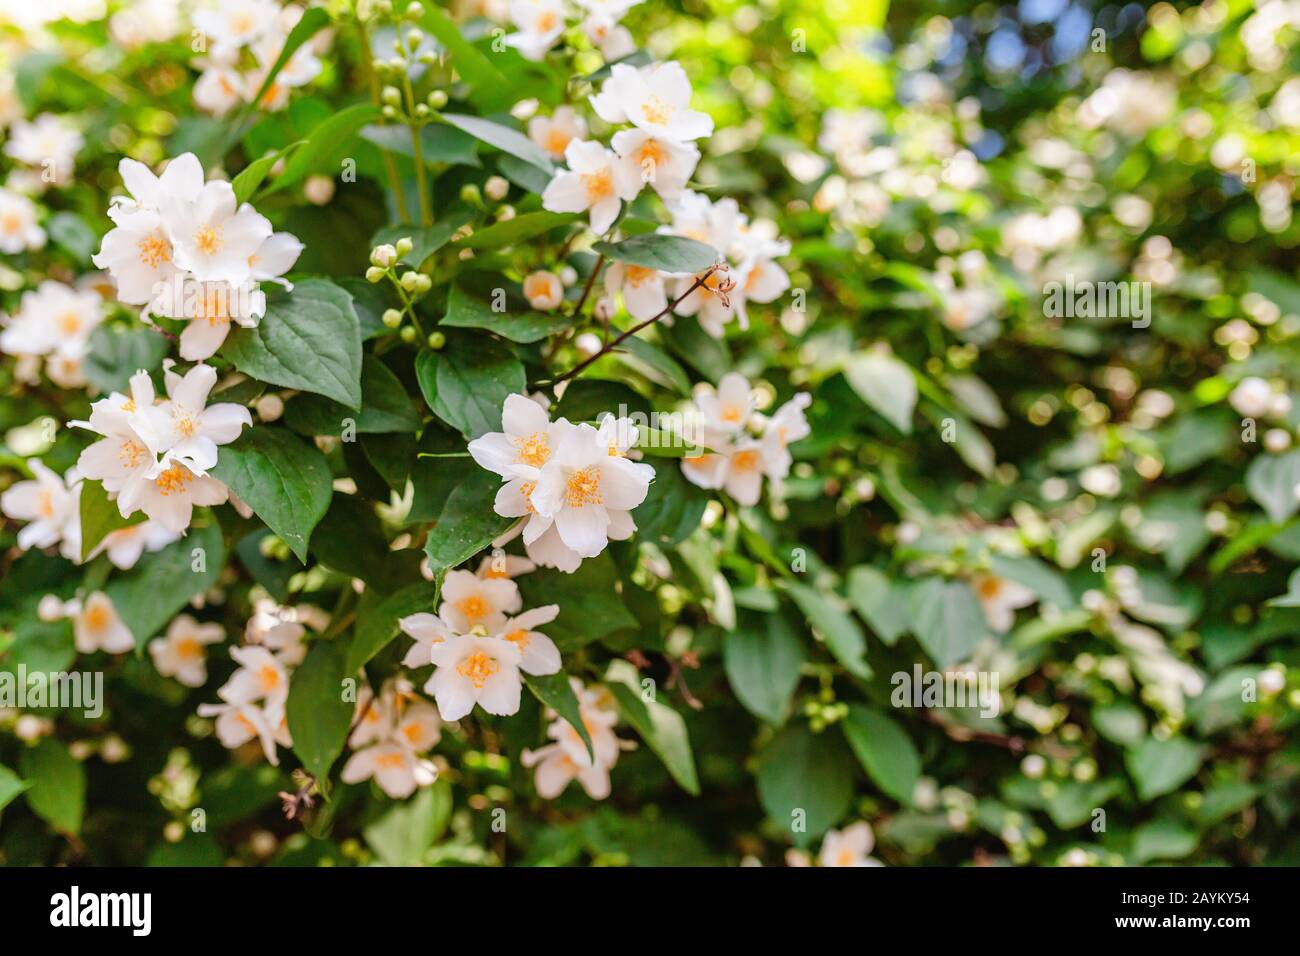 Philadelphus plant in bloom Stock Photo